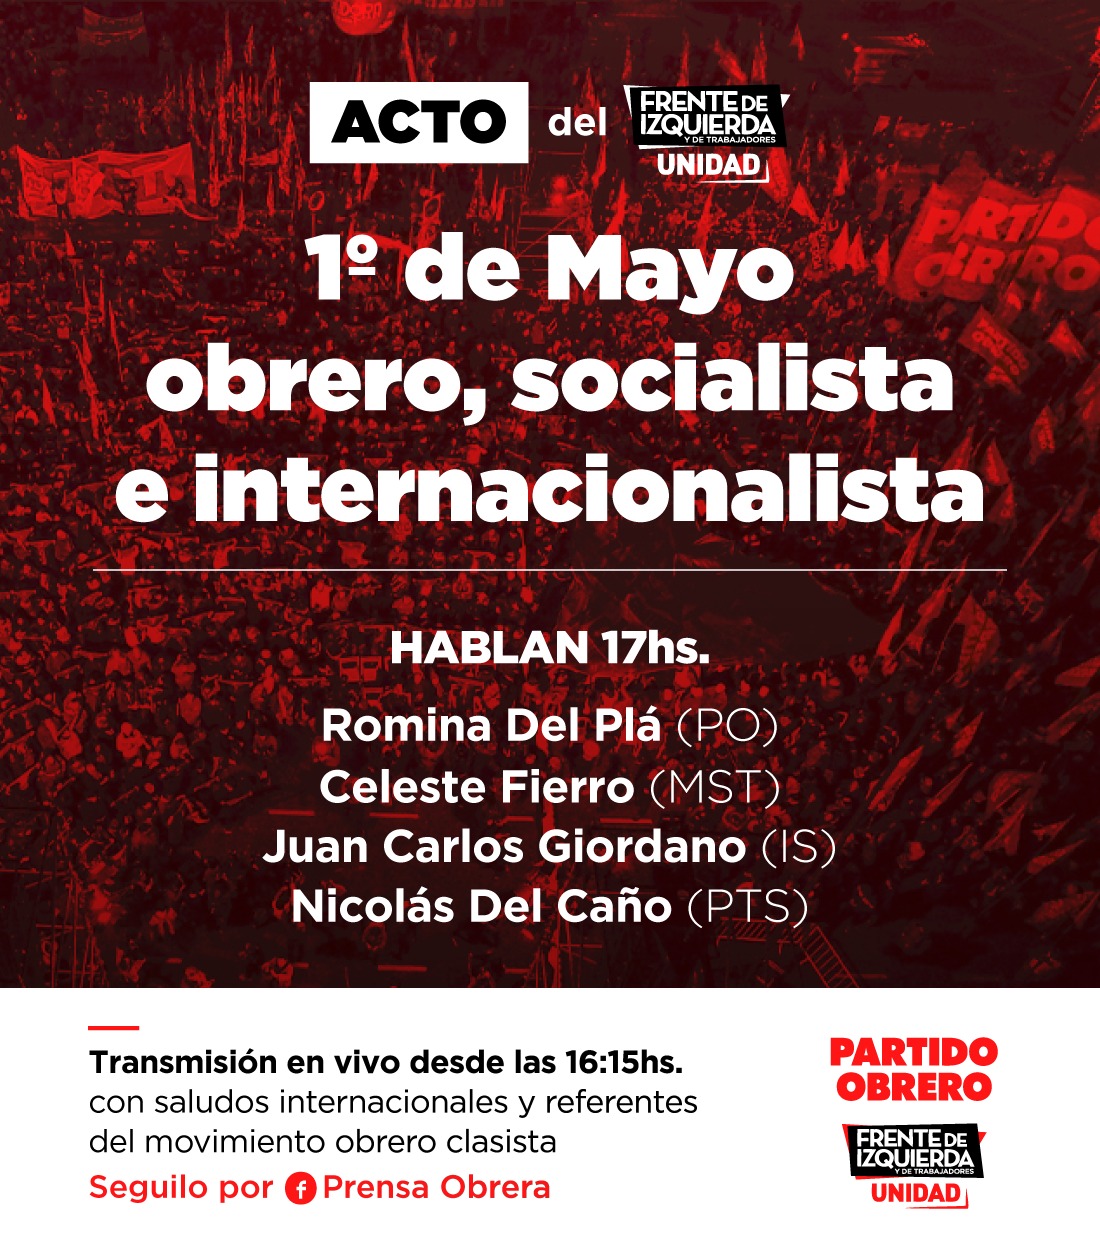 1° de mayo: acto del Frente de Izquierda vía redes sociales a las 17h